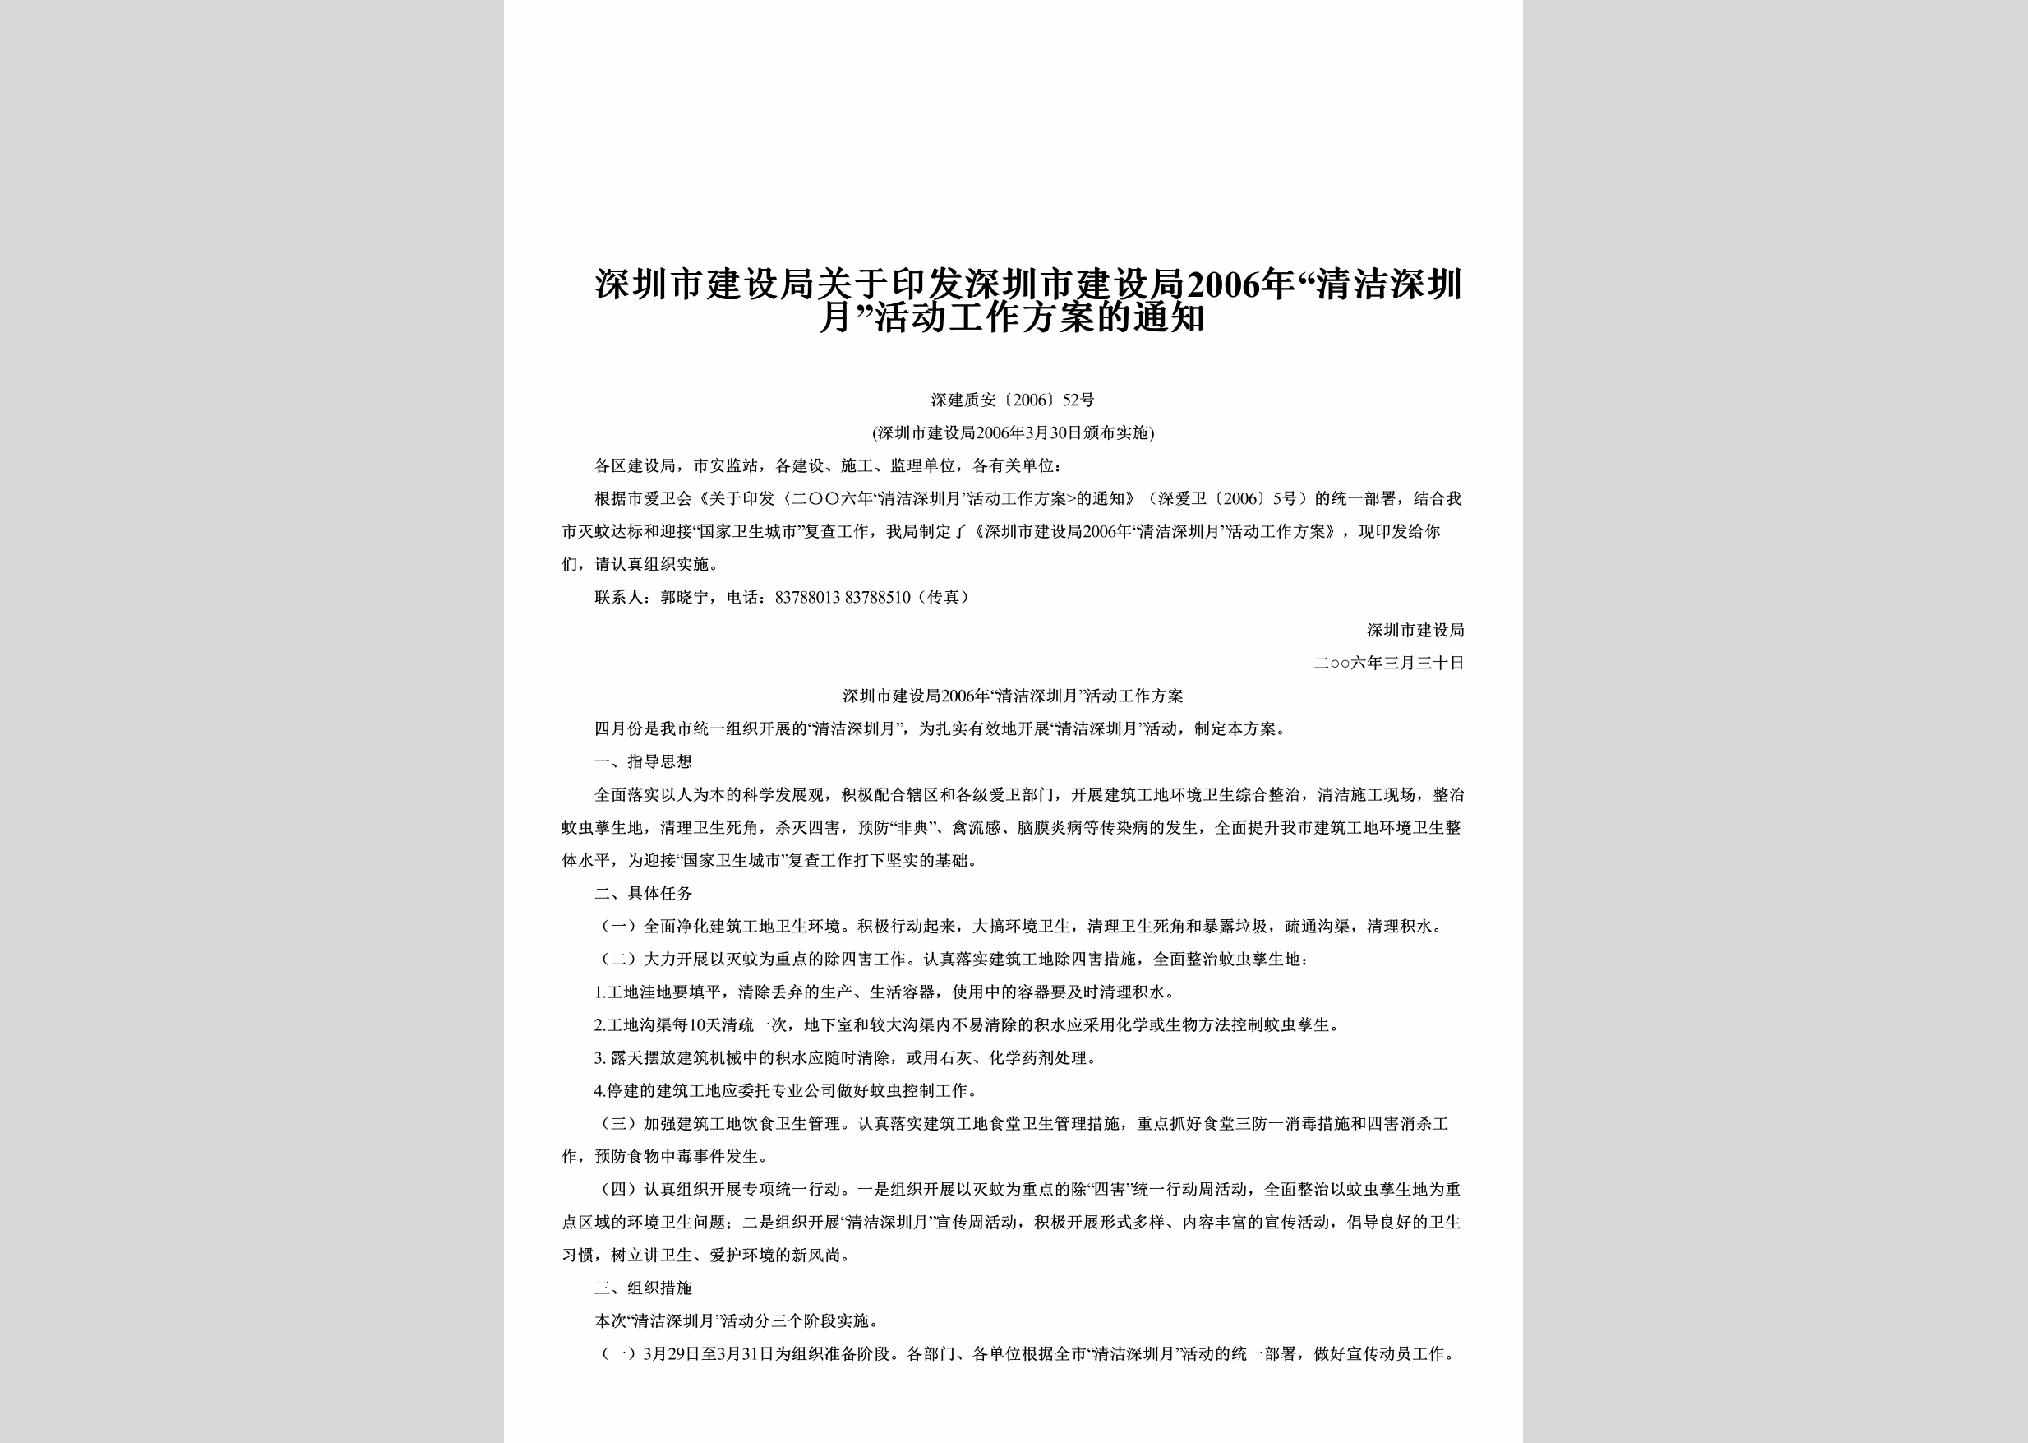 深建质安[2006]52号：关于印发深圳市建设局2006年“清洁深圳月”活动工作方案的通知